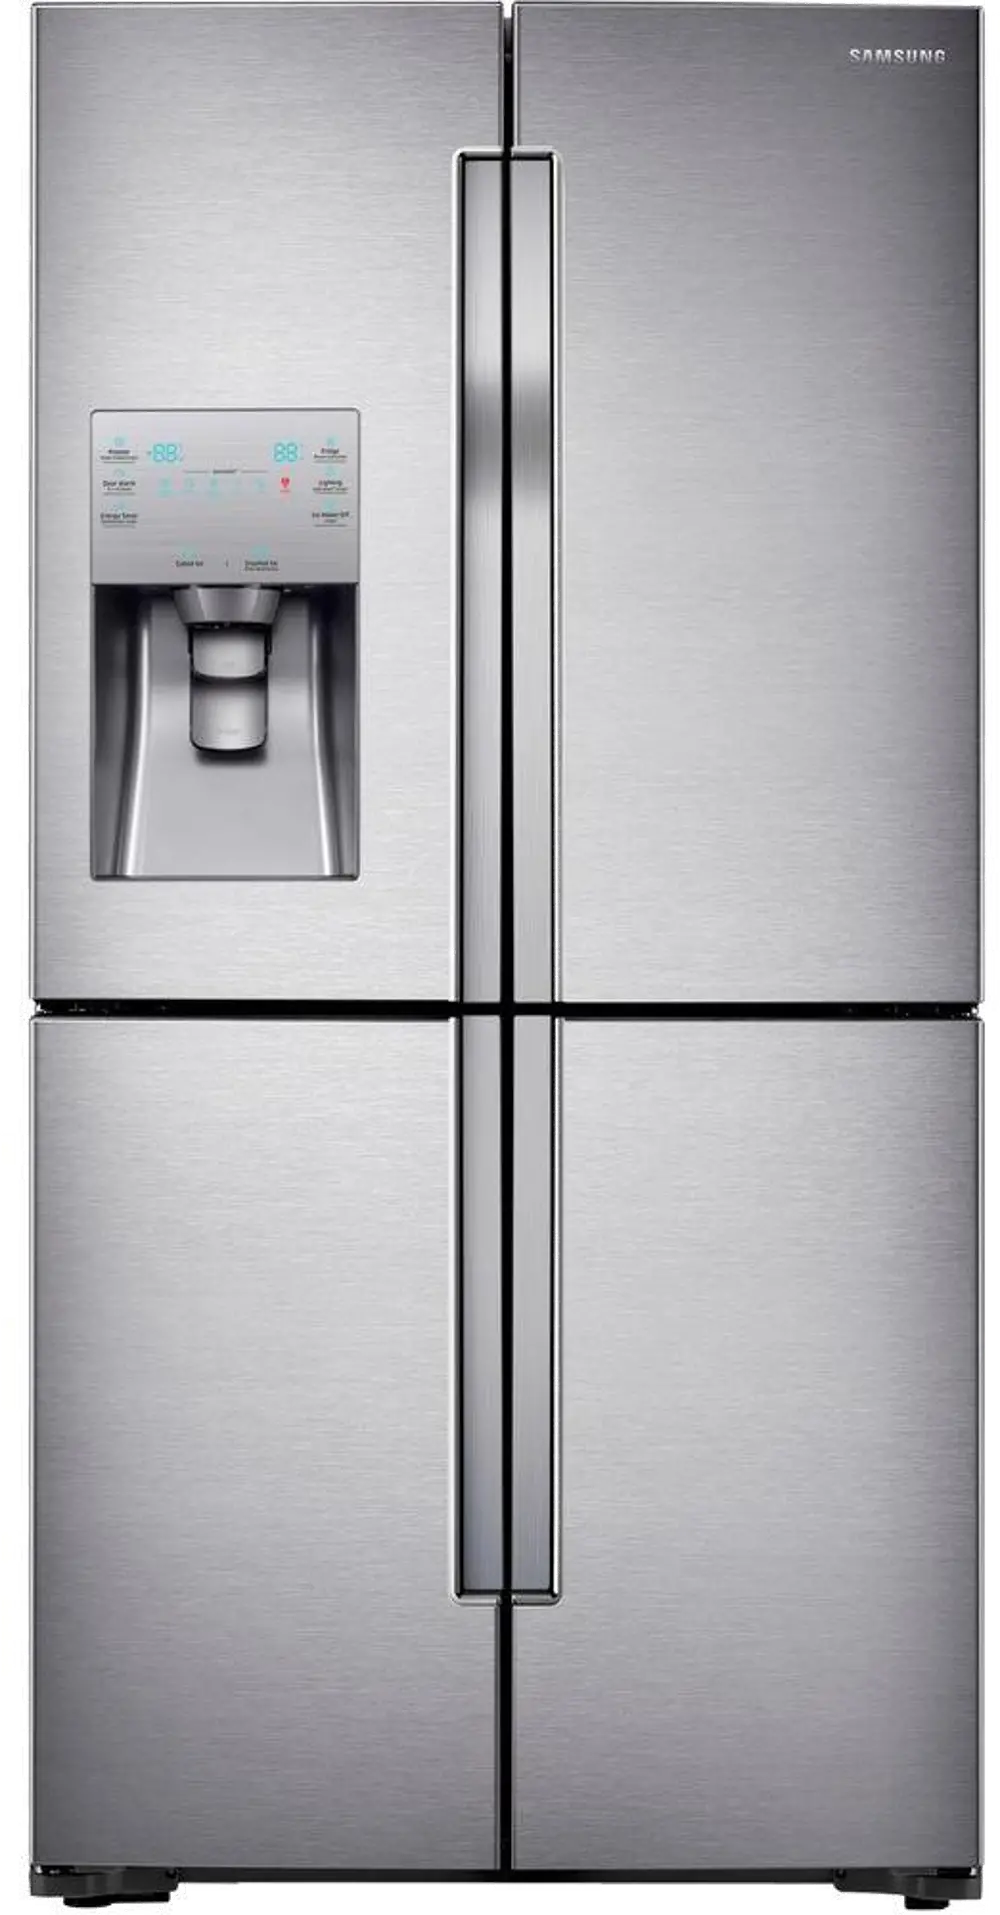 RF28K9070SR Samsung 4 Door French Door Smart Refrigerator with FlexZone - 28.1 cu. ft., 36 Inch Stainless Steel-1